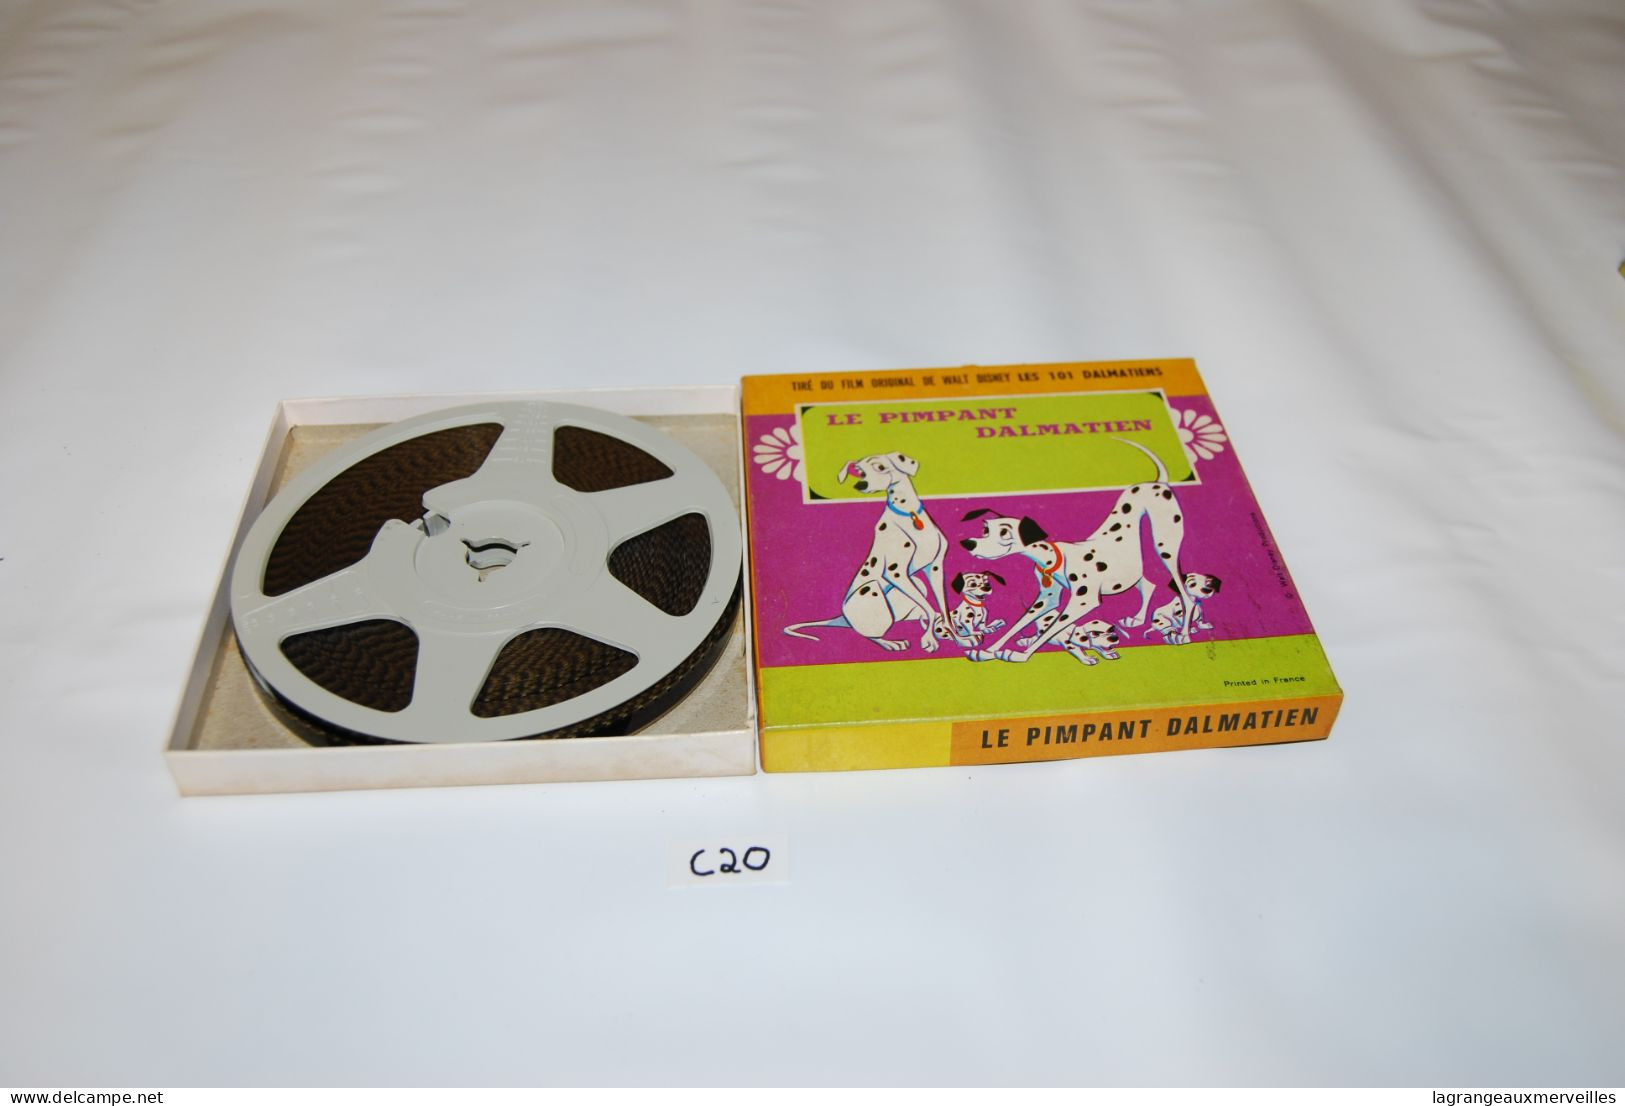 C20 Bobines Super 8 - Walt Disney - 35mm -16mm - 9,5+8+S8mm Film Rolls